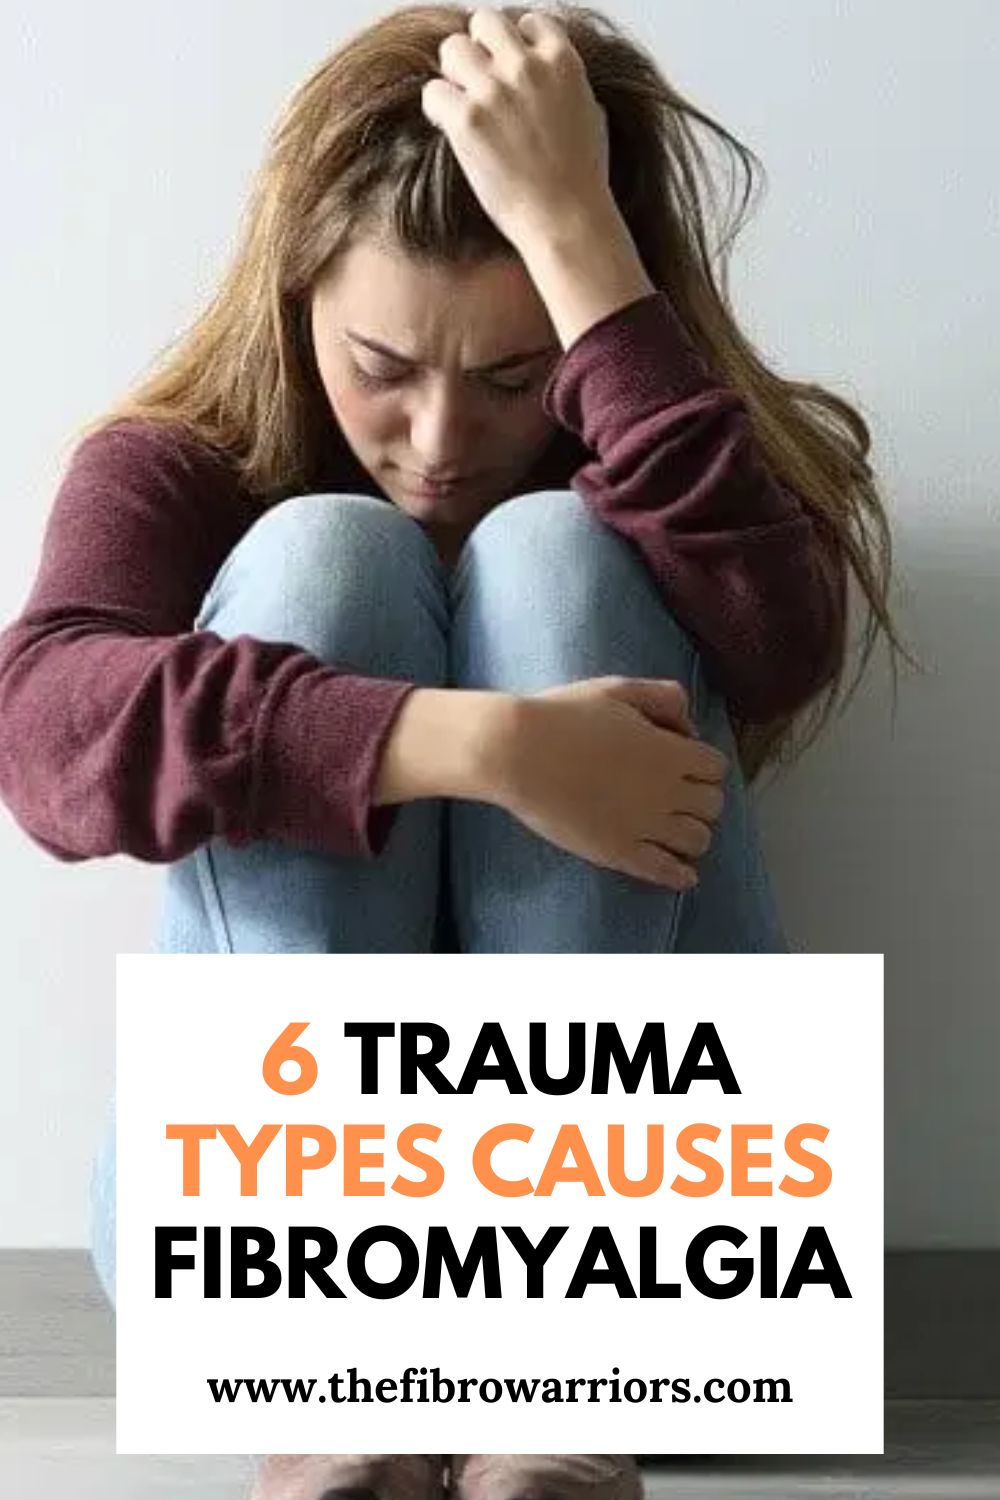 6 Trauma Types Causes Fibromyalgia